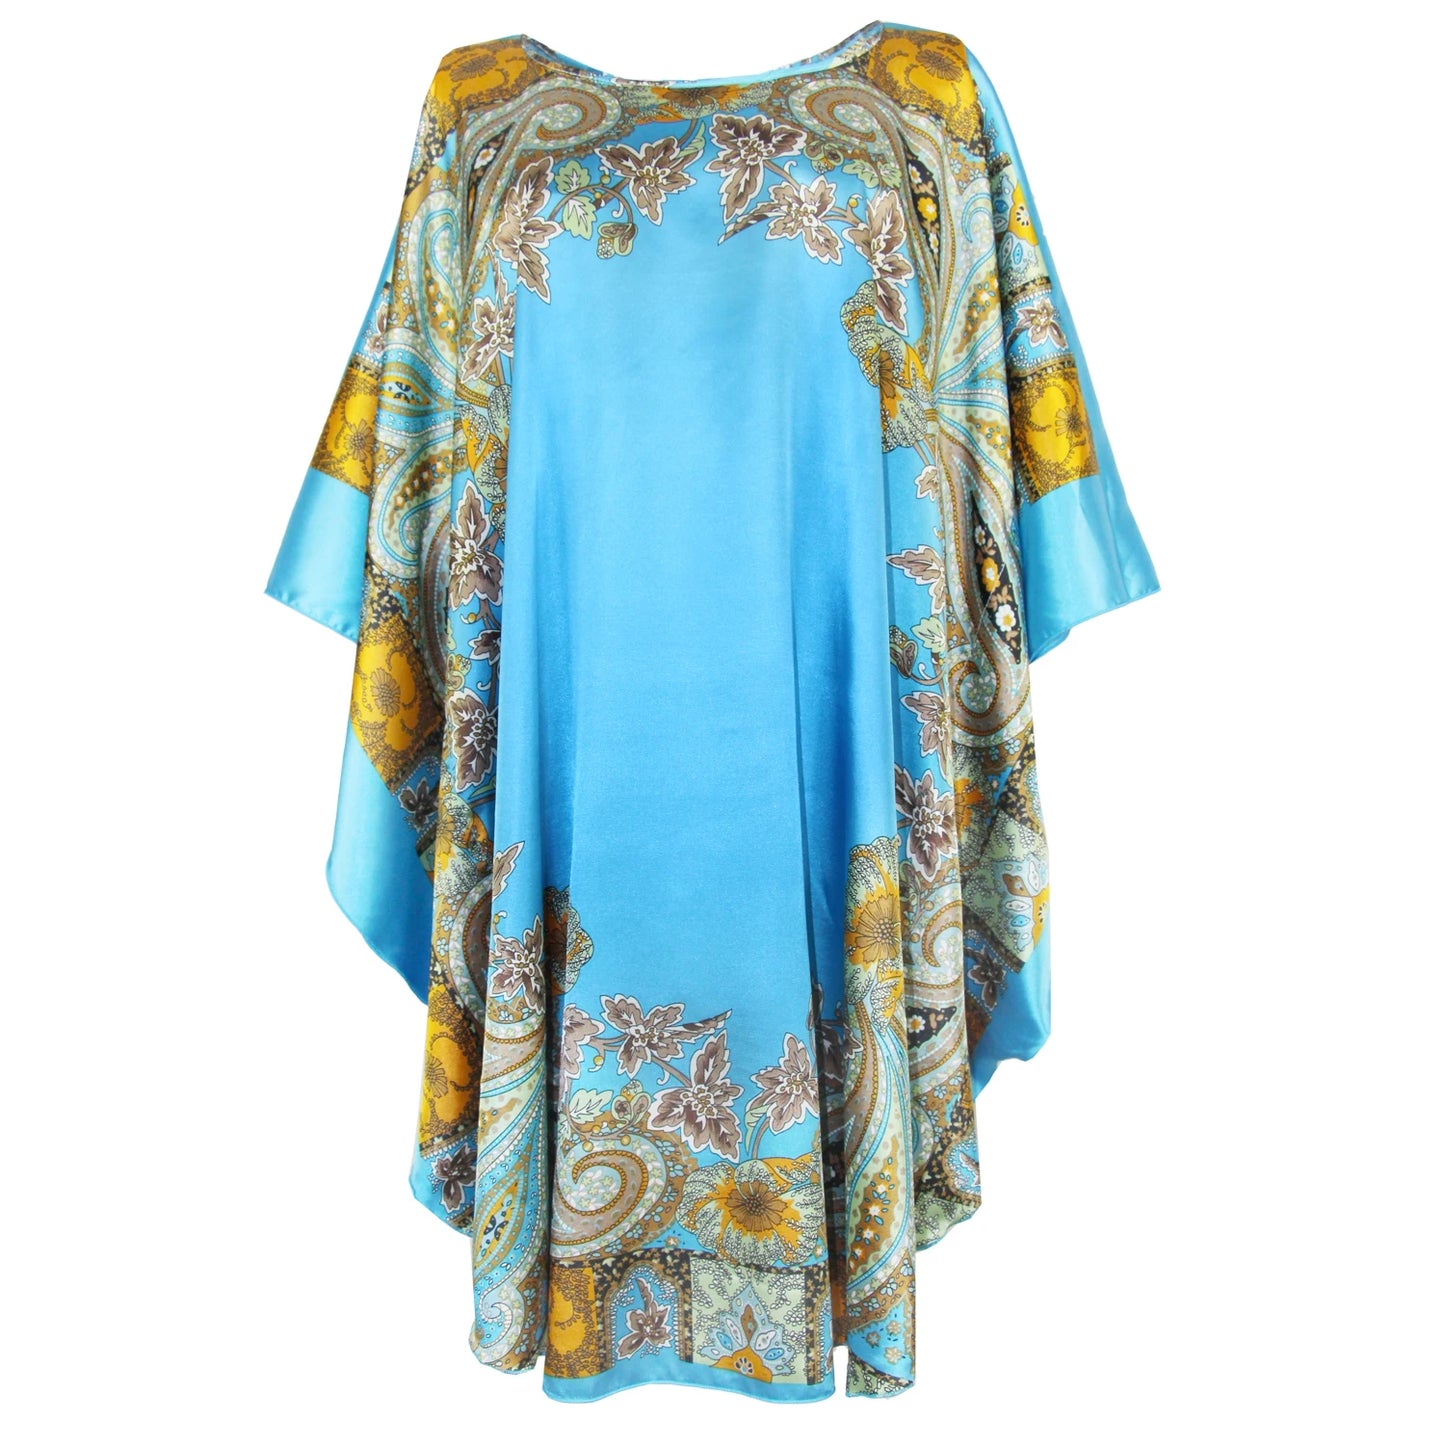 Silk Rayon Robe Bath Gown/beach cover up.